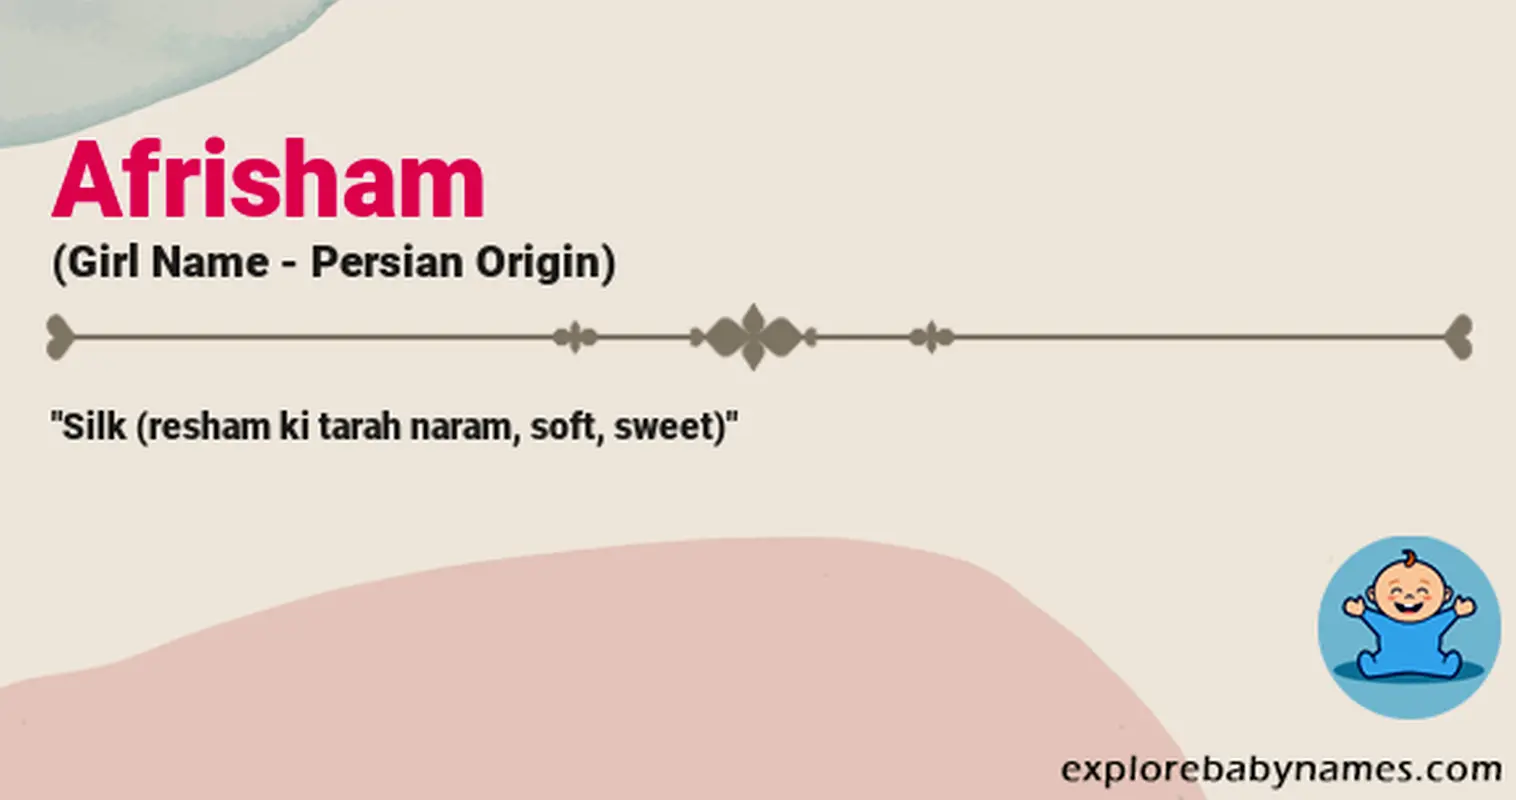 Meaning of Afrisham